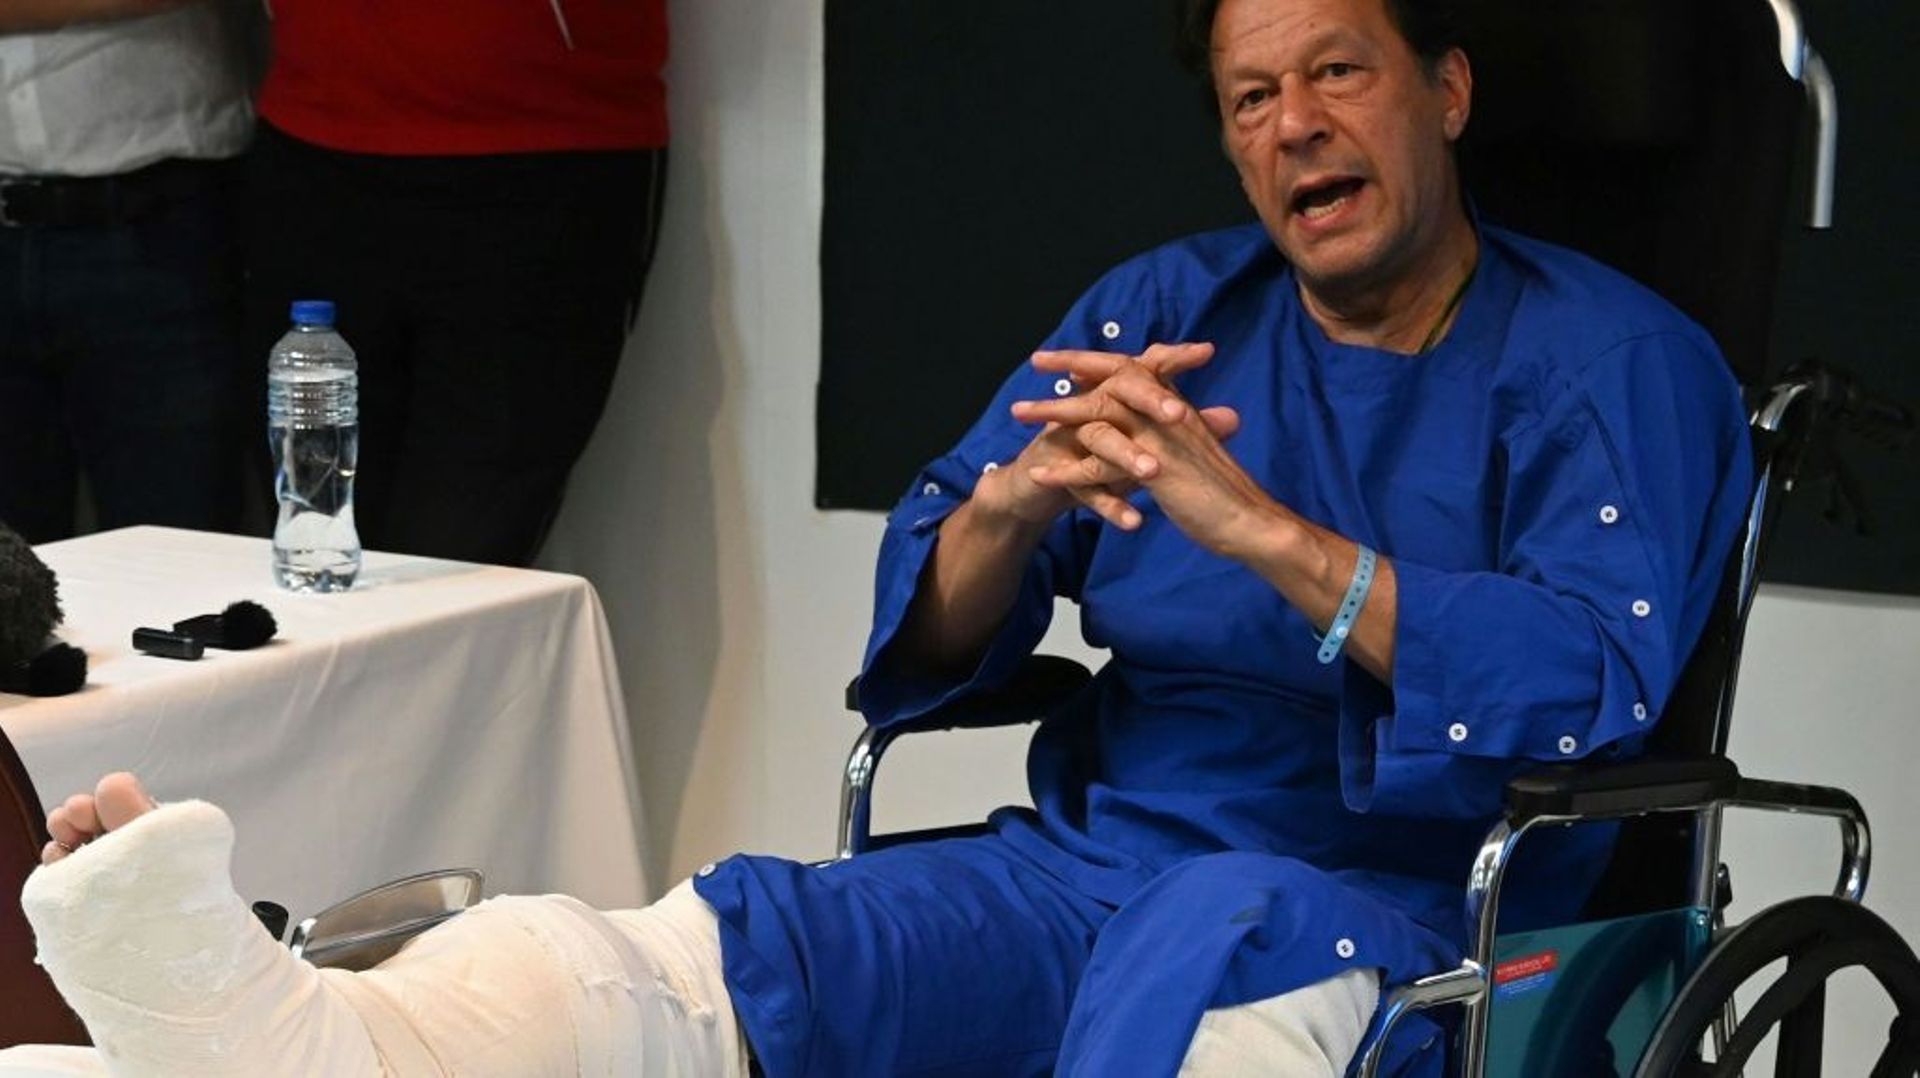 L’ancien Premier ministre pakistanais Imran Khan dans sa chambre d’hôpital à Lahore lors d’une rencontre avec les médias, au lendemain d’une tentative d’assassinat à Wazirabad, le 4 novembre 2022